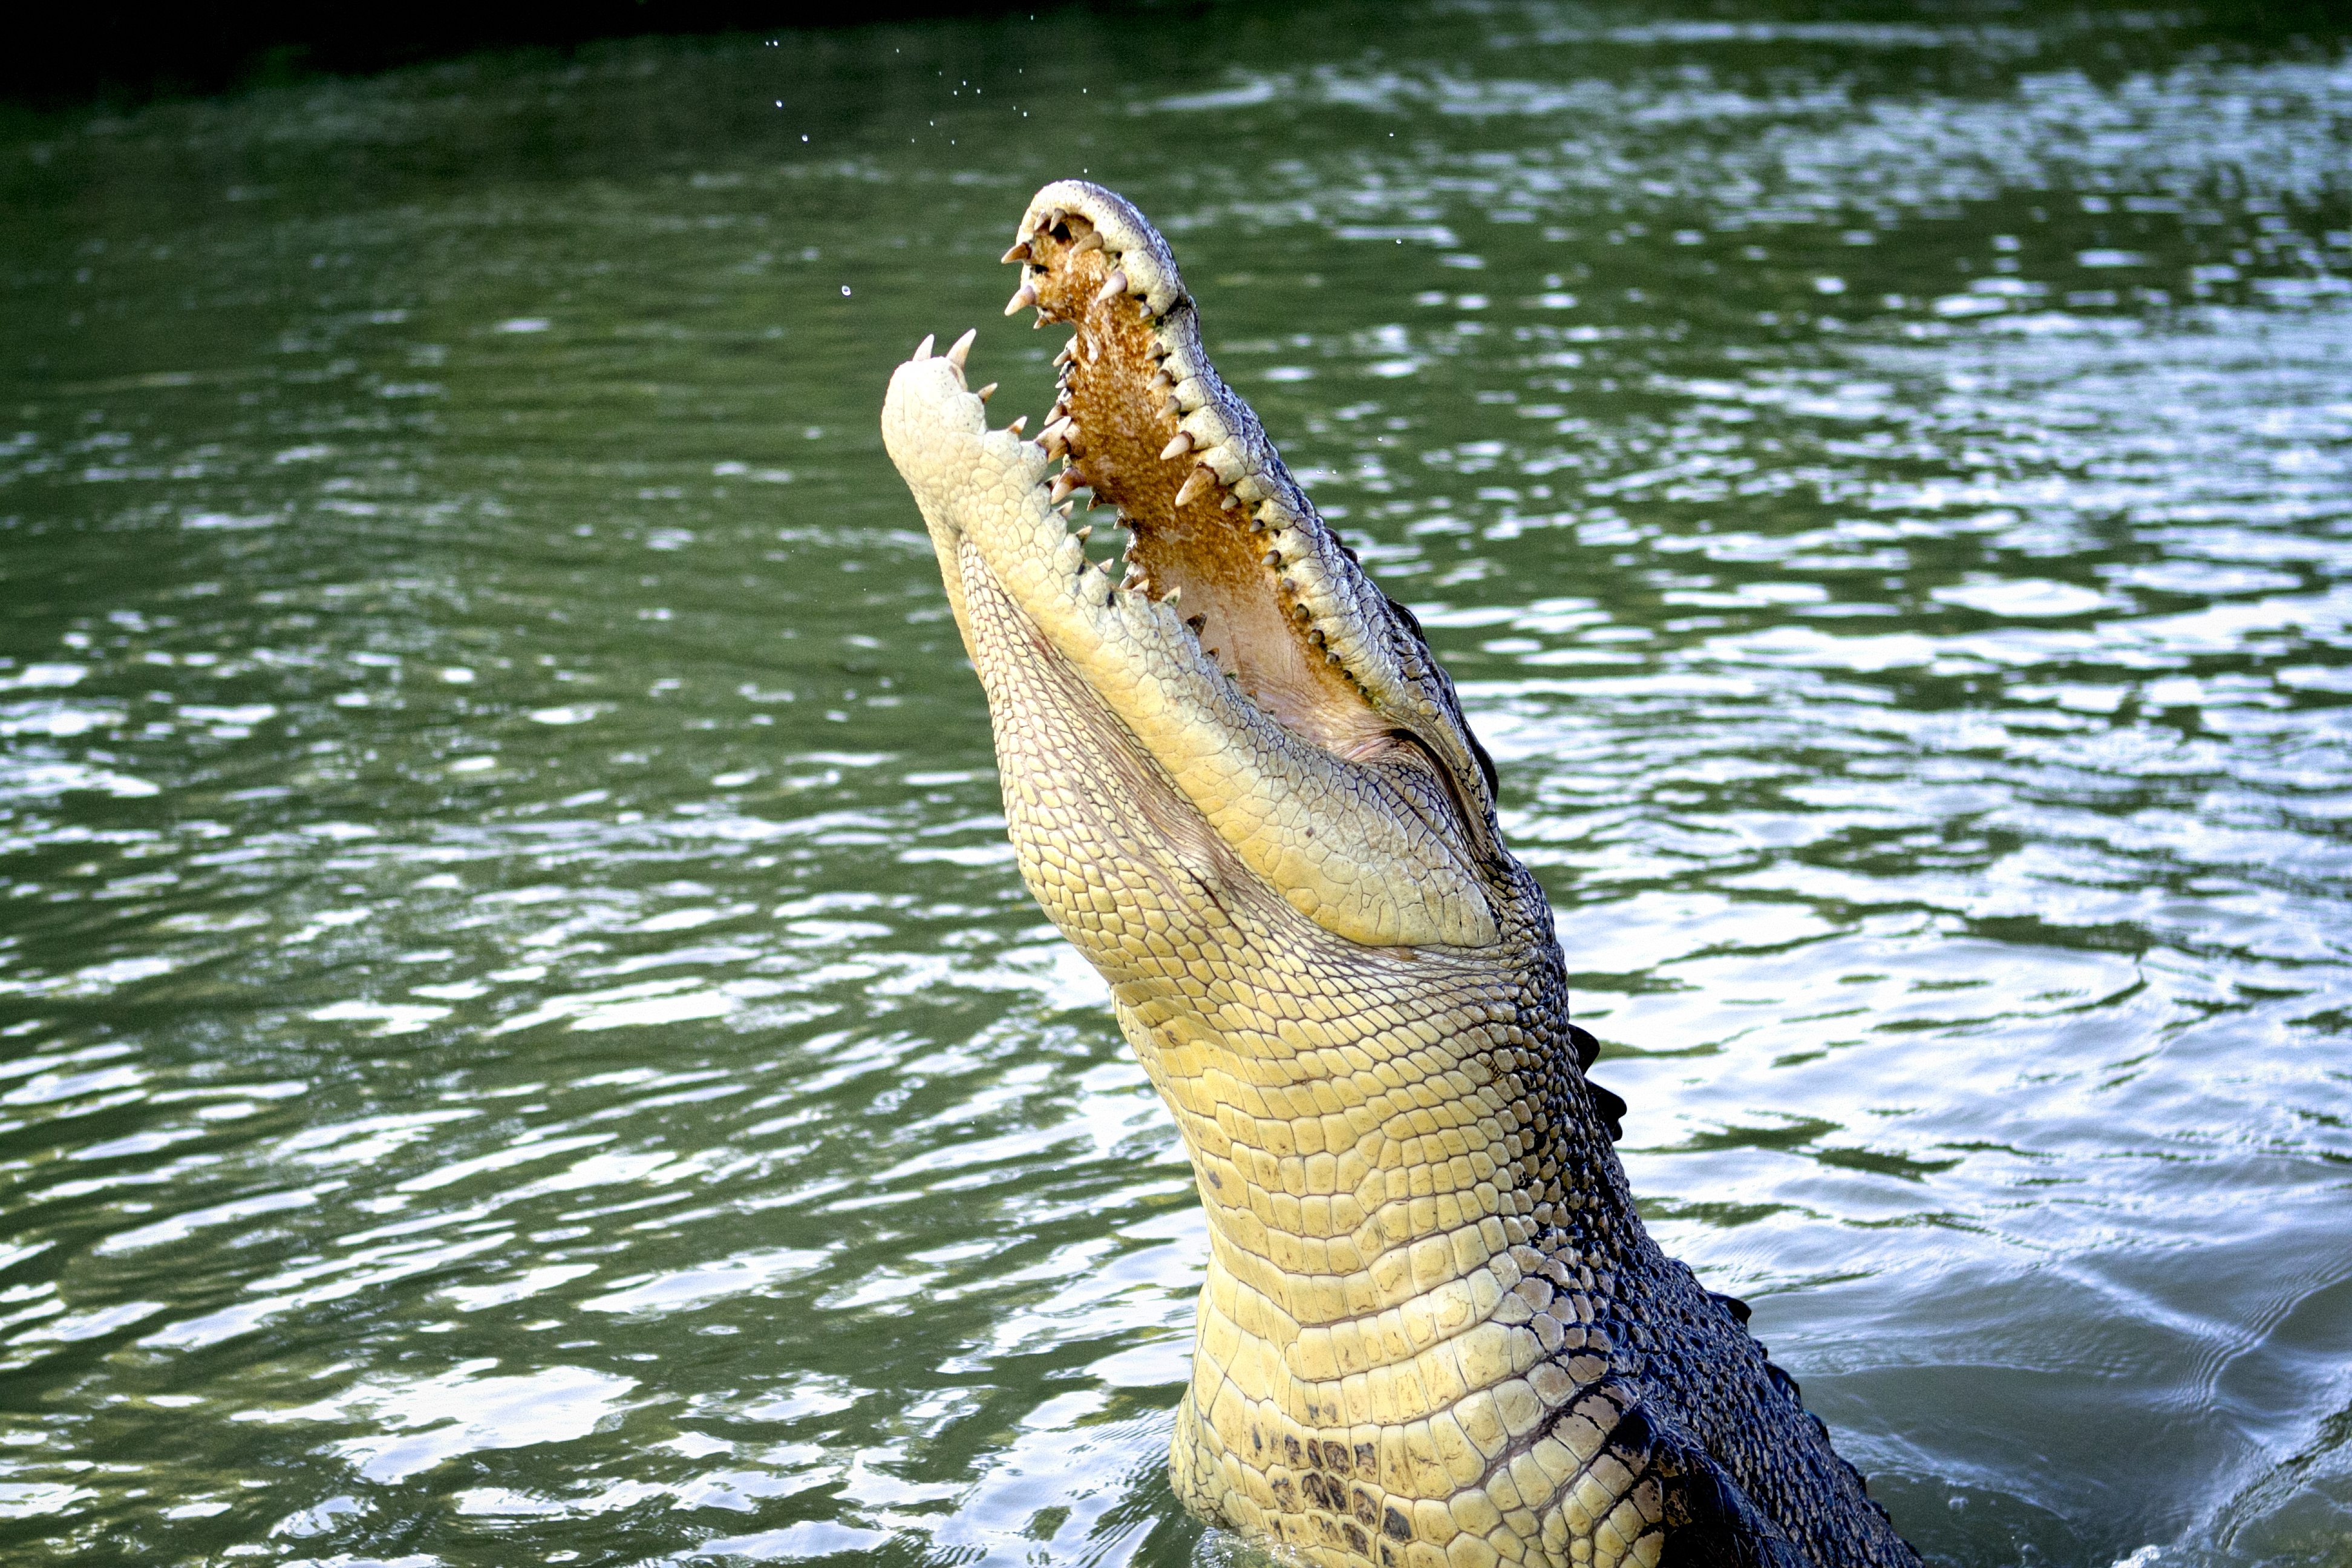 阿德萊德河鱷魚餵食 & 自然探險半日遊